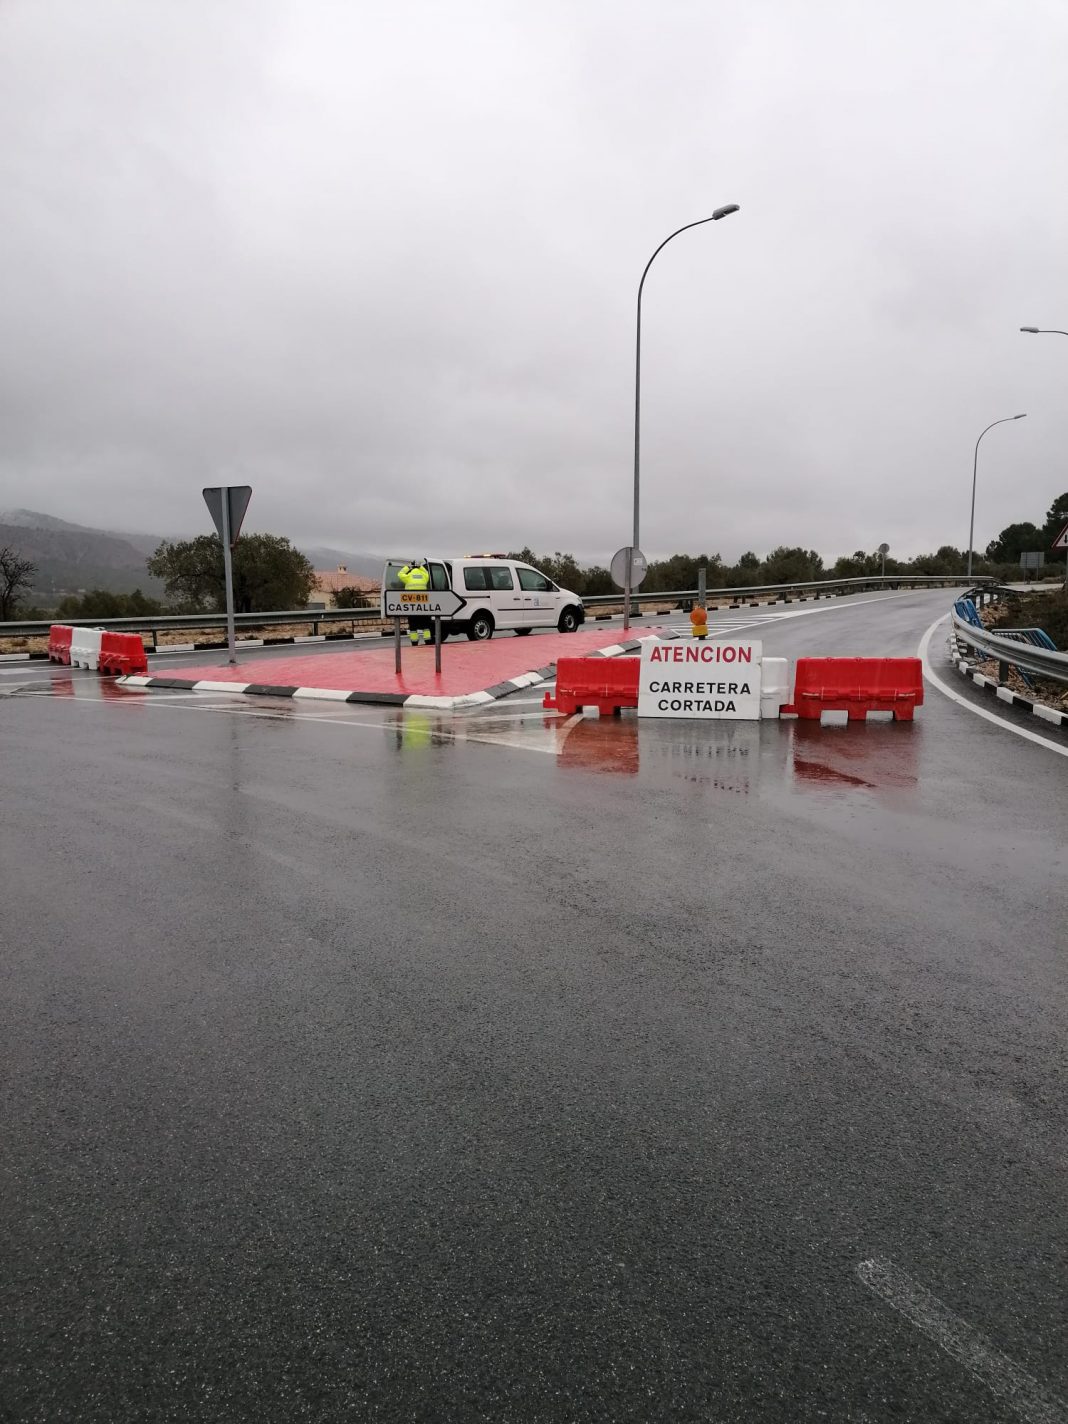 La Diputación de Alicante corta dos carreteras para garantizar el cierre perimetral de Castalla decretado por la Generalitat